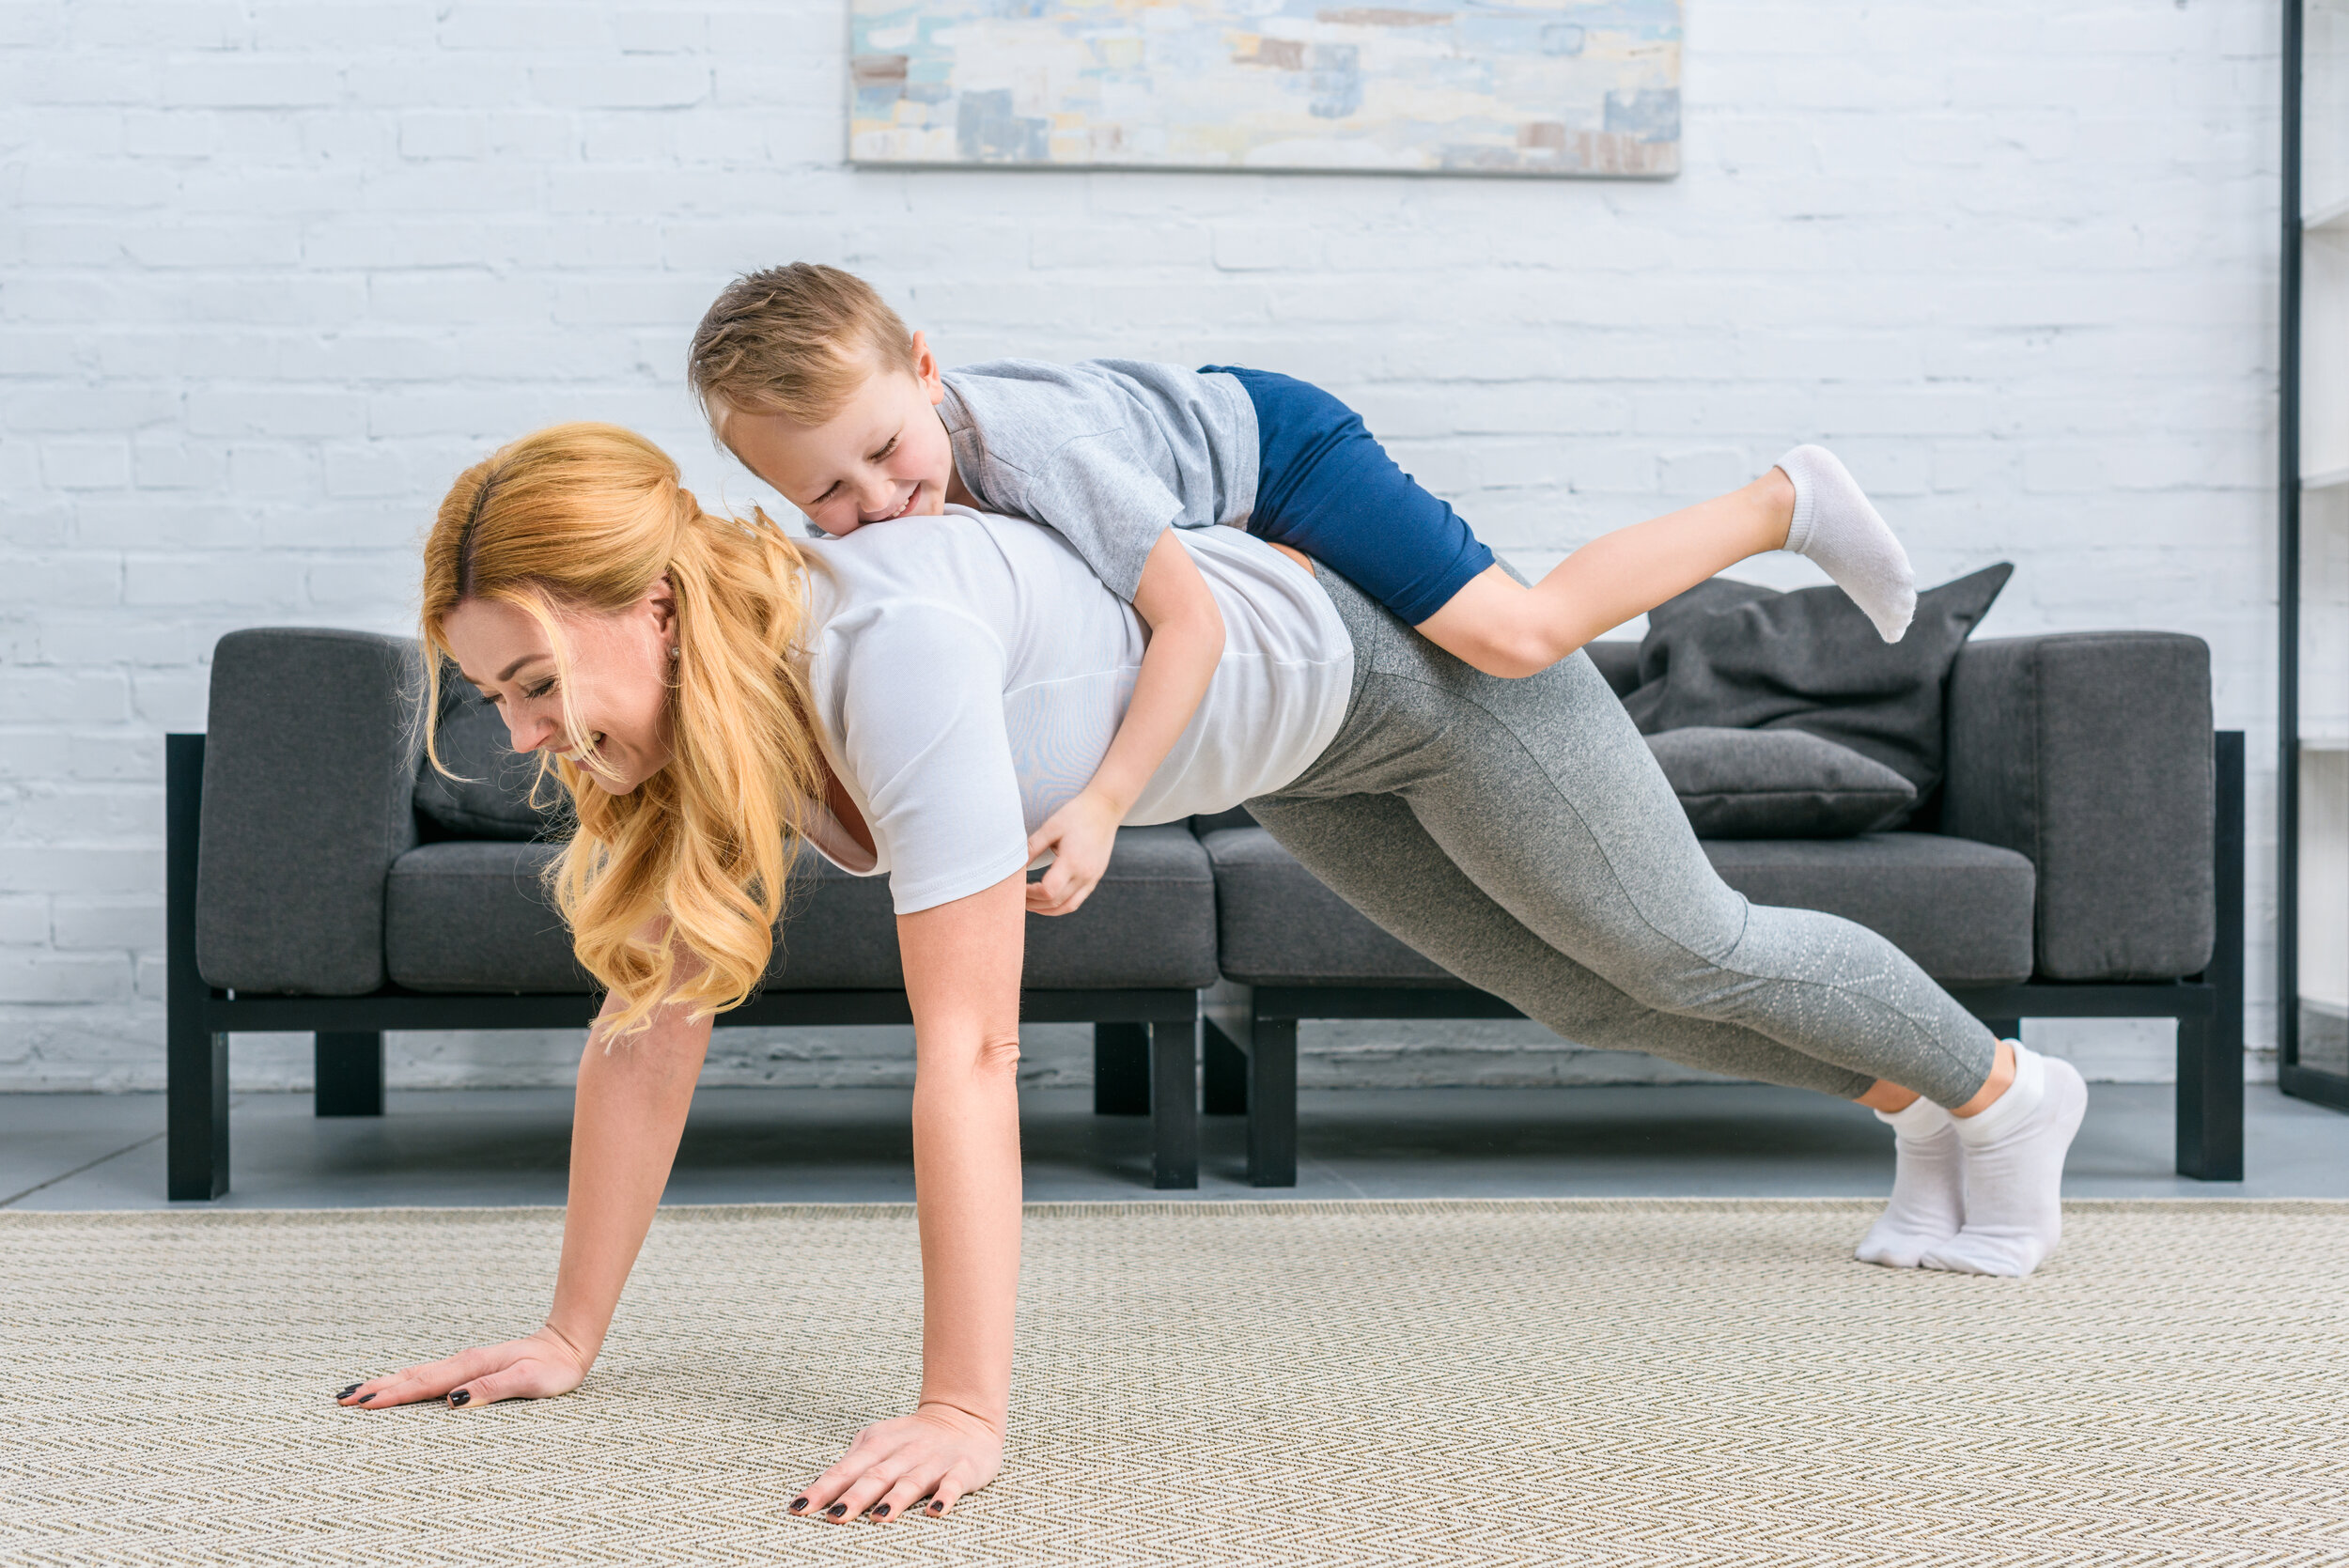 Сын делает мама массаж видео. Семейные тренировки. Упражнение семейное фото.